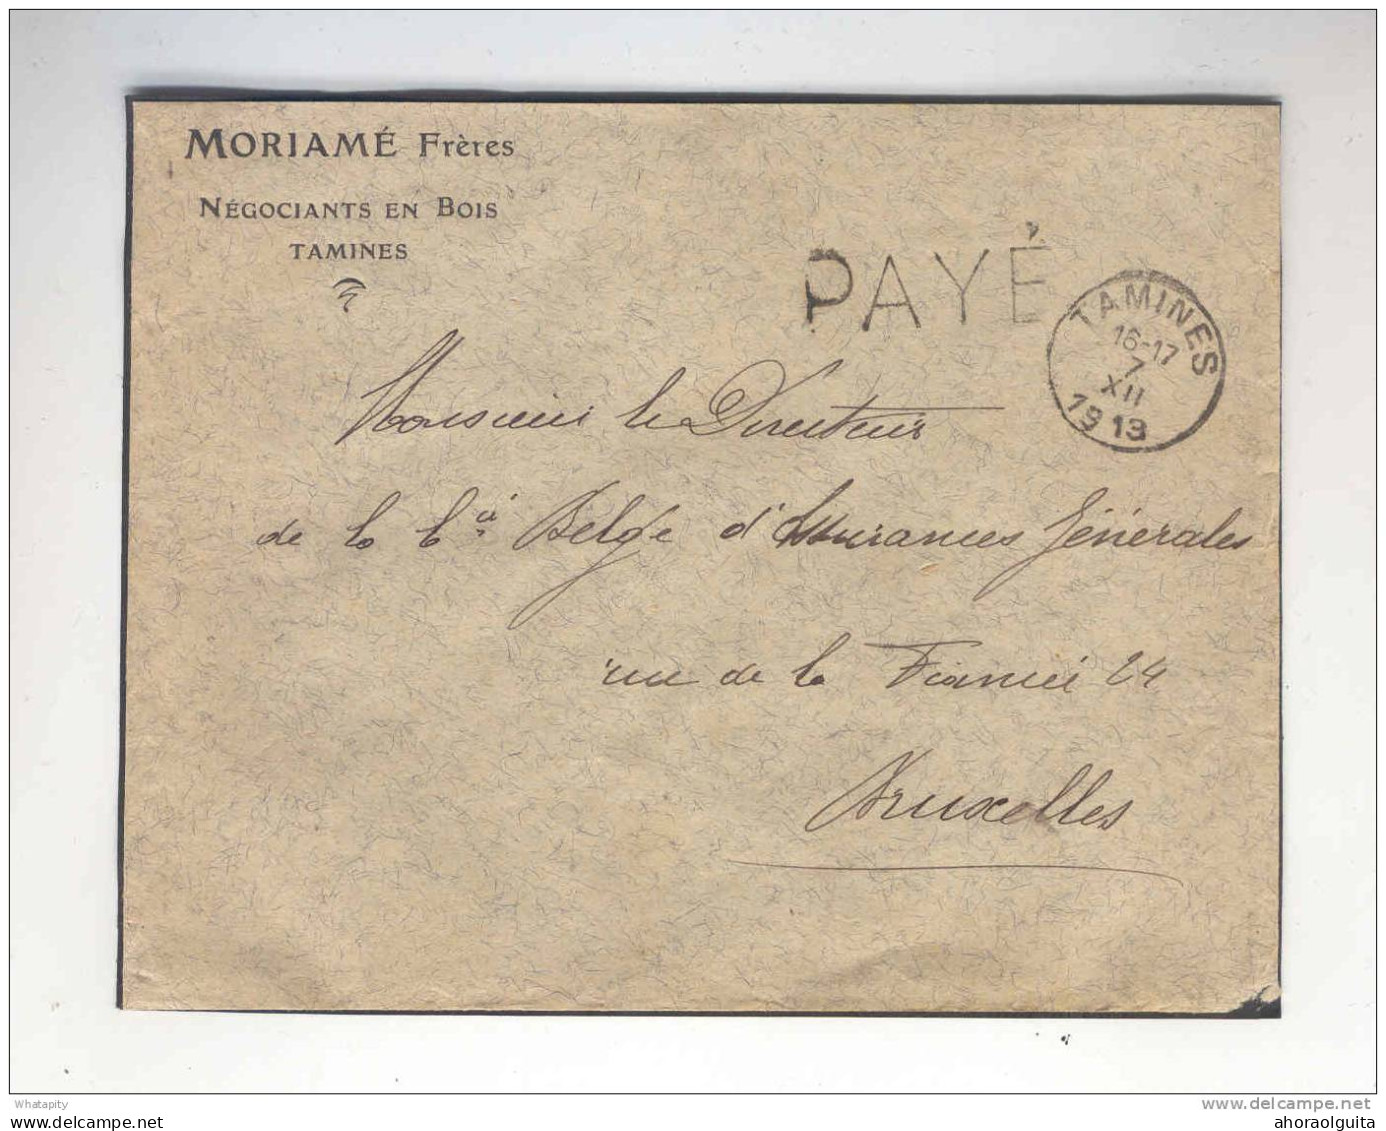 Lettre Cachet Belge TAMINES 7 XII13 (Erreur Pour 18) Griffe PAYE - Entete Moriame Frères , Négociants En Bois --  B7/693 - Fortune Cancels (1919)